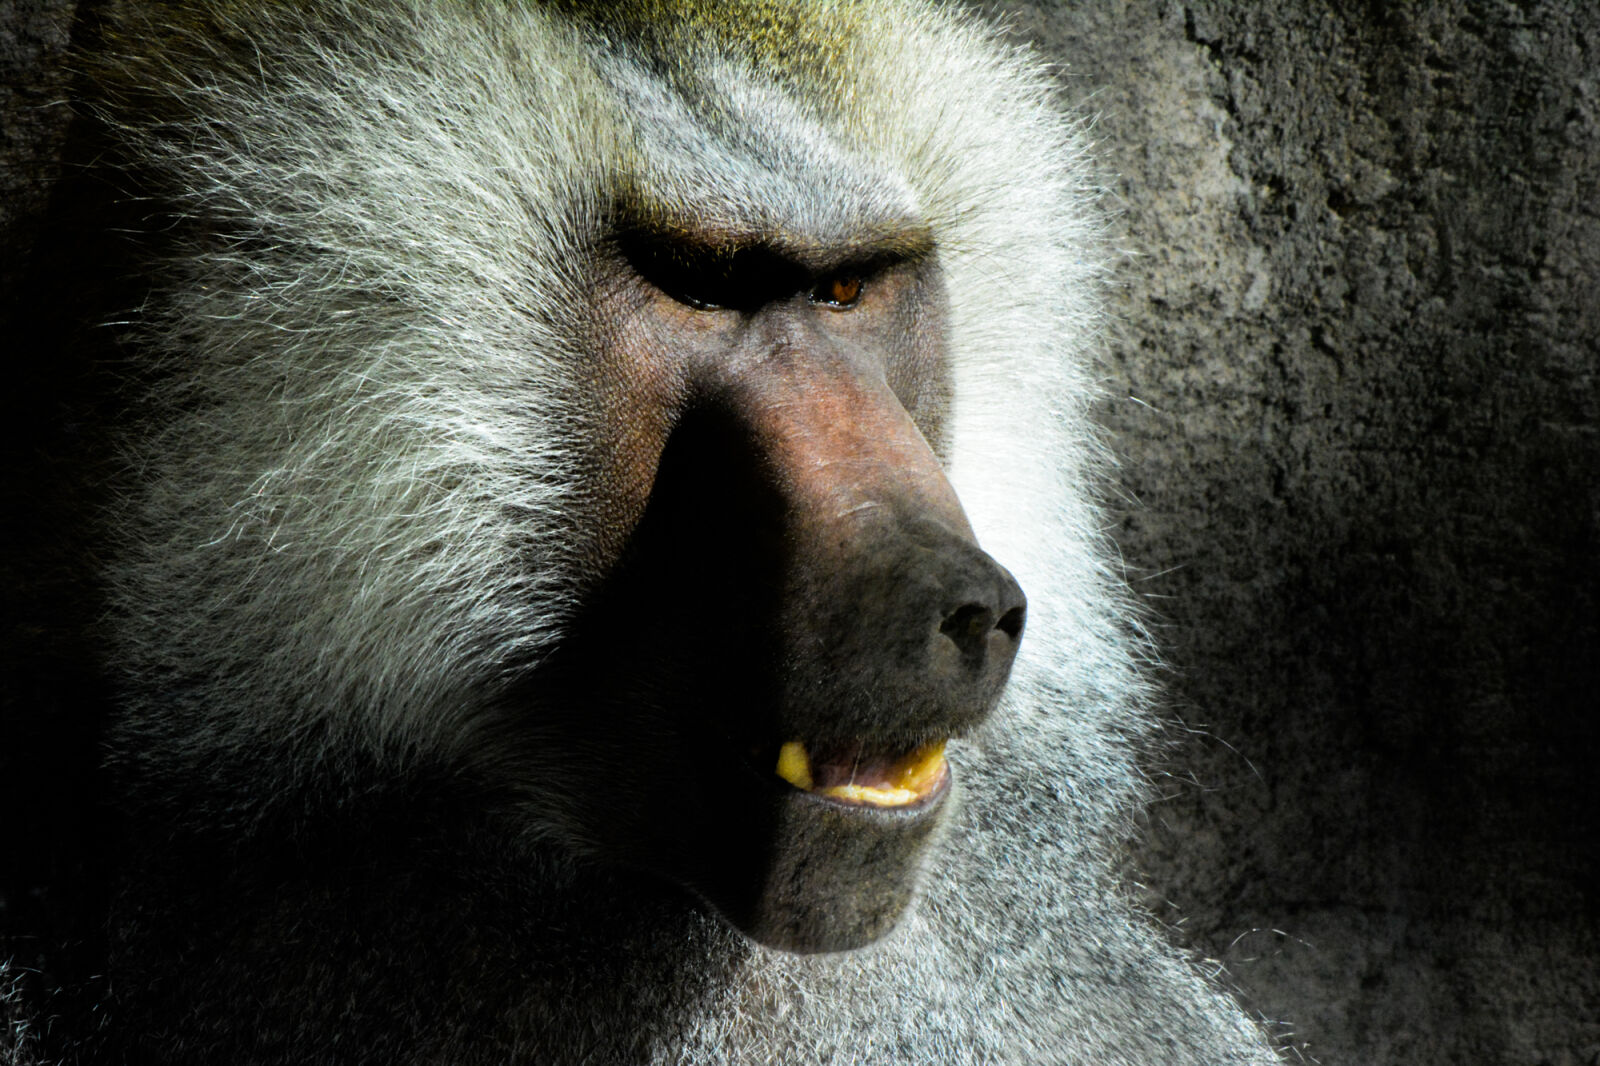 Nikon AF-S DX Nikkor 55-300mm F4.5-5.6G ED VR sample photo. Baboon, baboons, monkey, monkeys photography